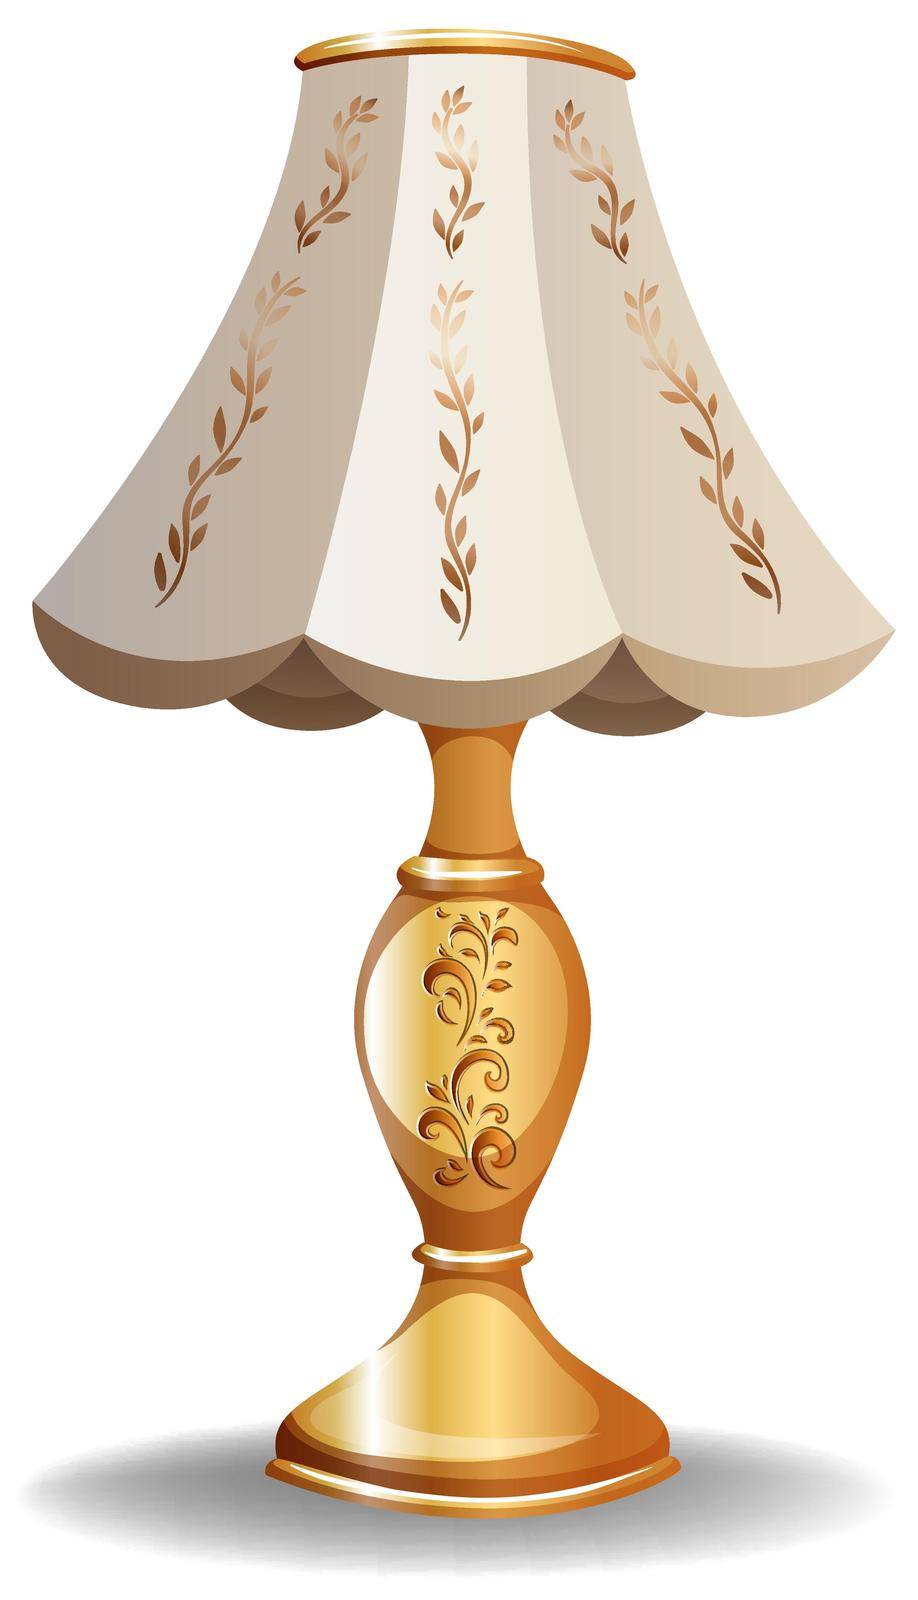 Luxury lamp in vintage design